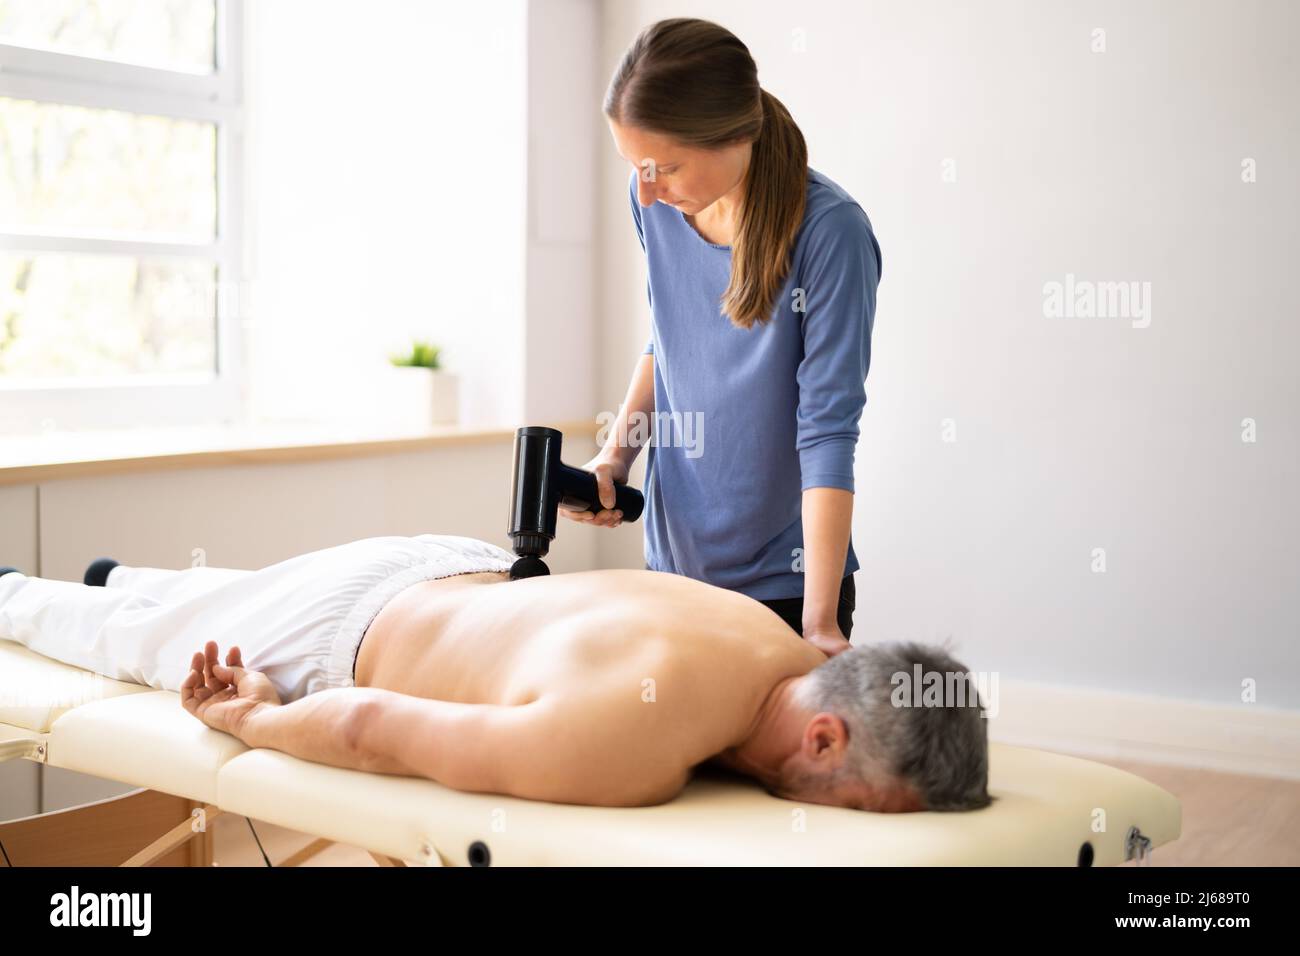 https://c8.alamy.com/compes/2j689t0/maquina-de-pistola-de-masaje-para-terapia-de-recuperacion-muscular-2j689t0.jpg